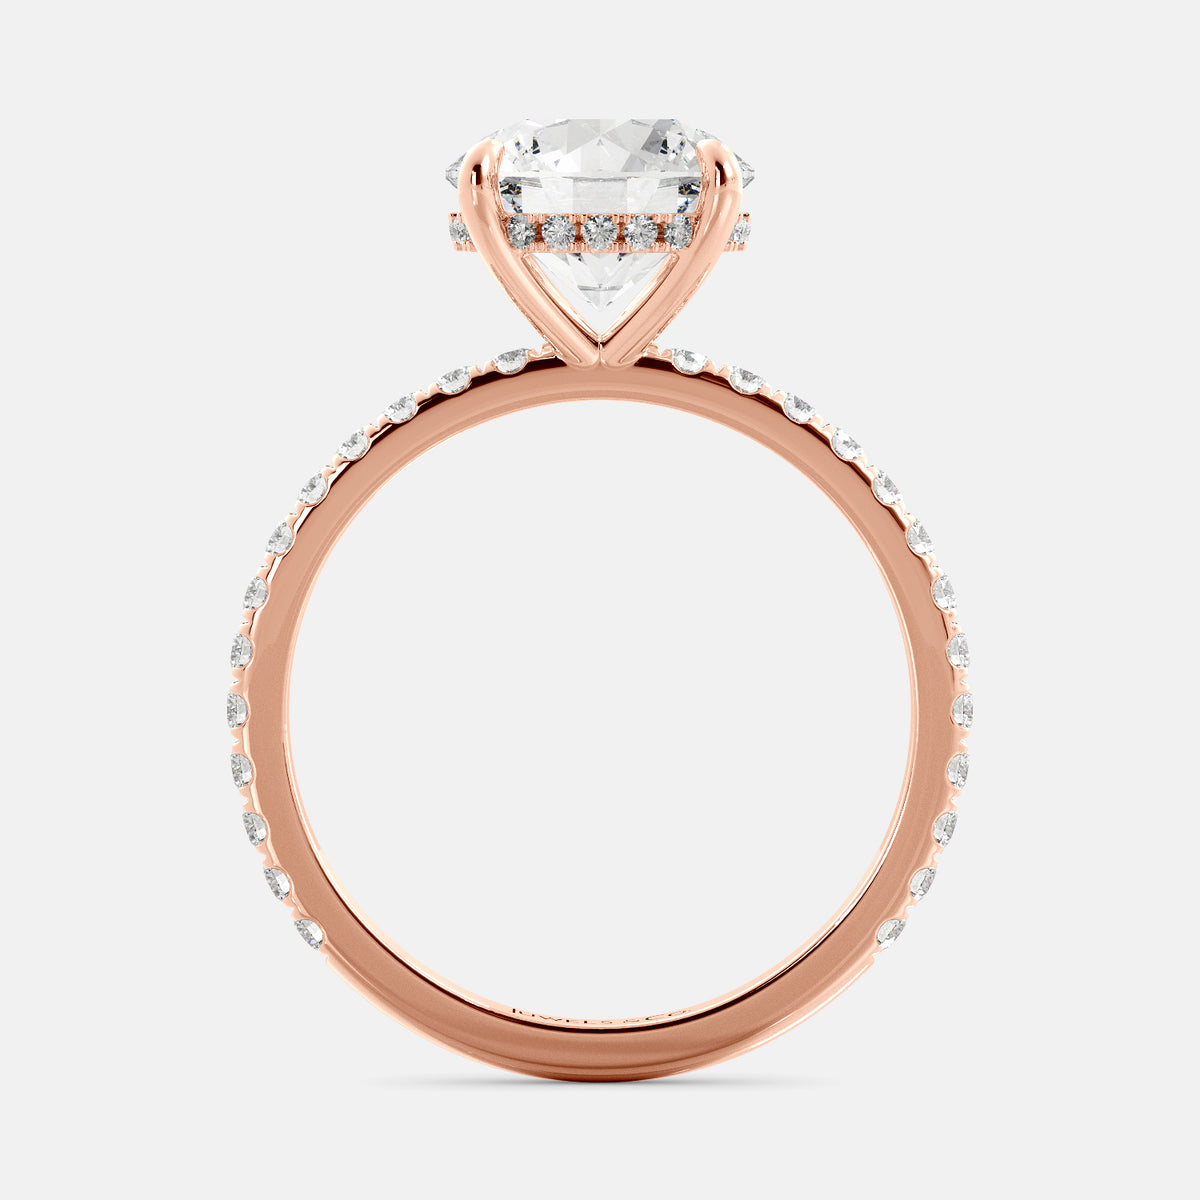 Round Solitaire Diamond Ring with Pavé